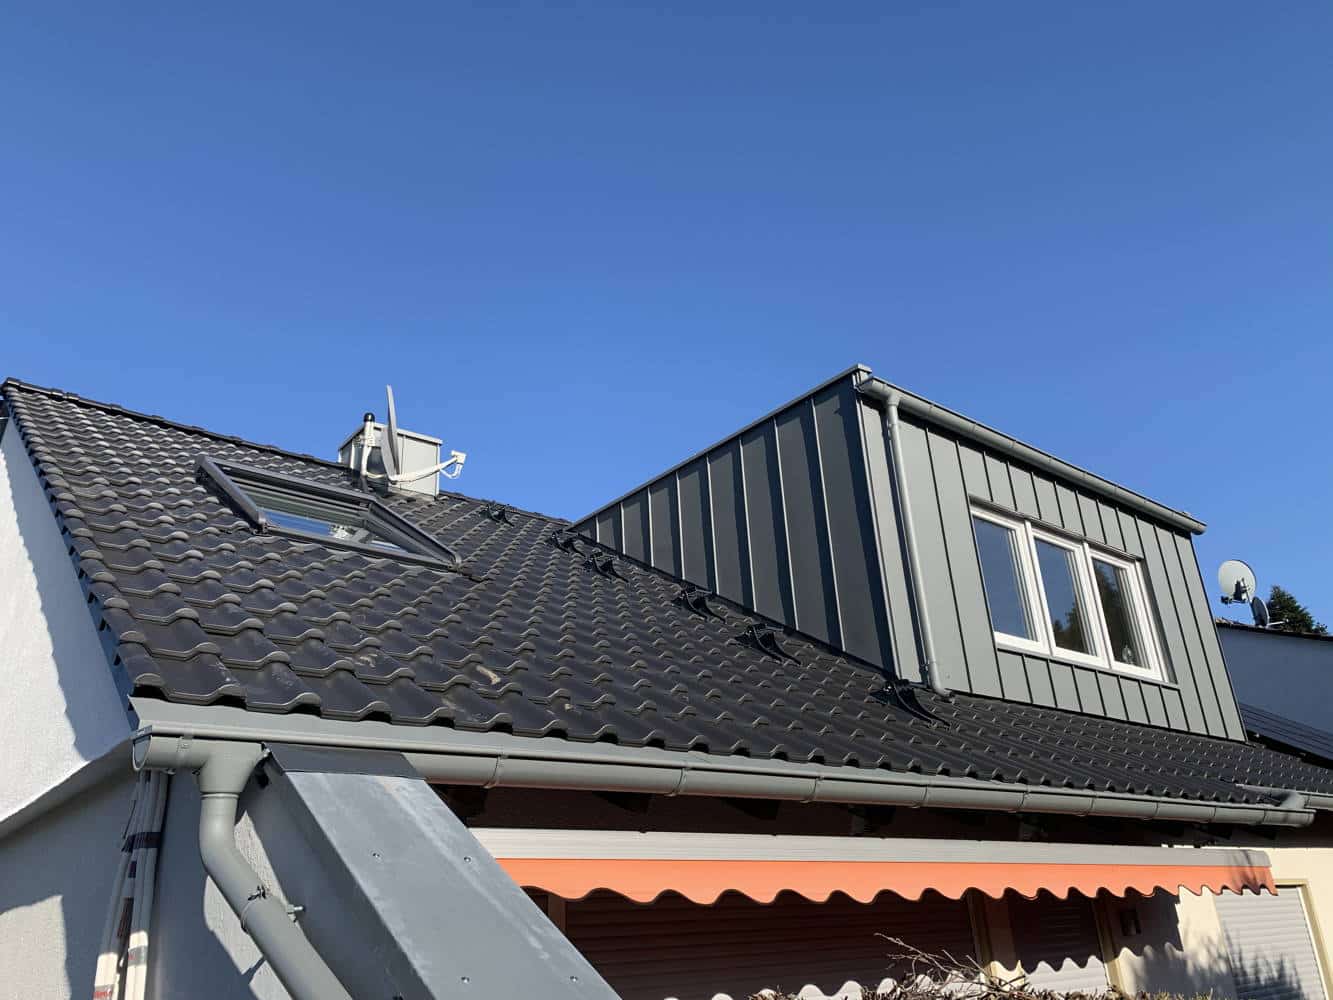 Sehr schönes neues Dach mit einem zinkverkleideten Ausbau vor blauem Himmel.